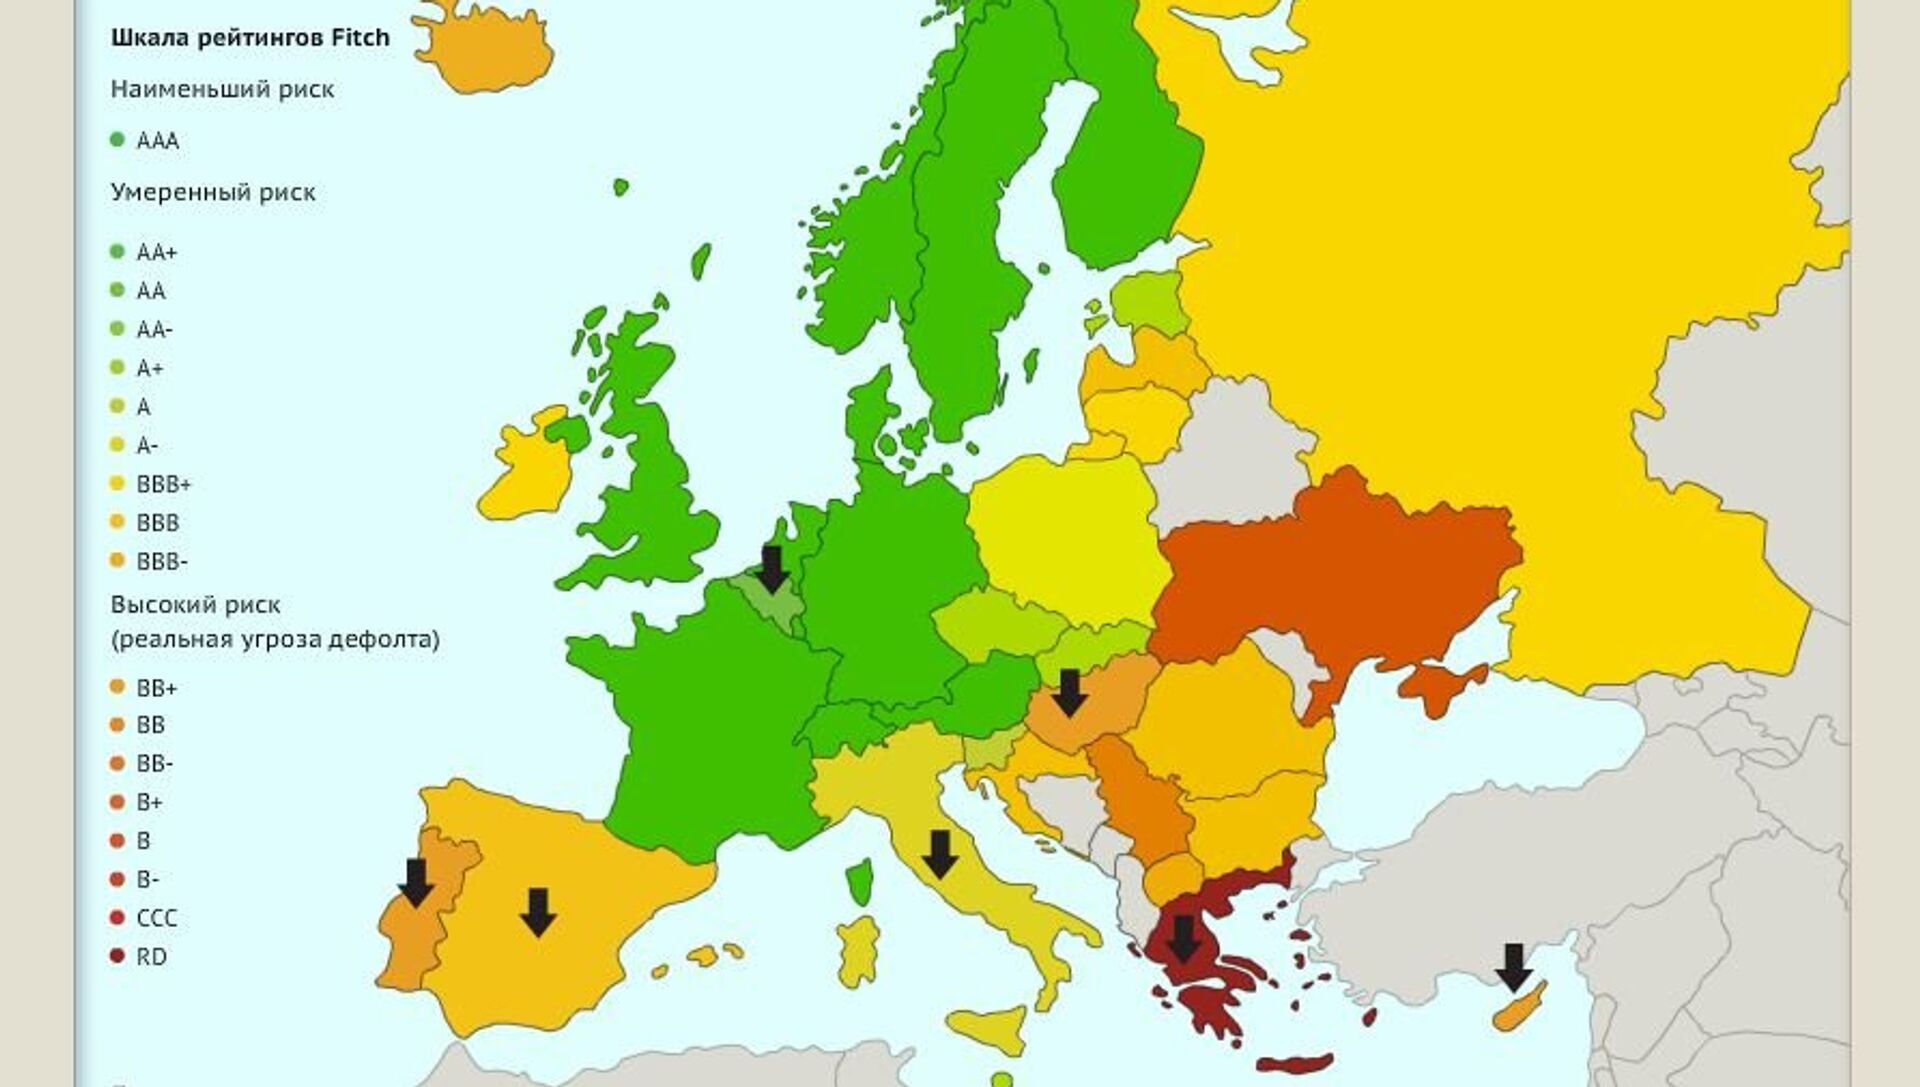 Суверенные государства европа. Кредитный рейтинг. Суверенный рейтинг стран. Кредитный рейтинг стран. Развивающиеся страны Европы карт.